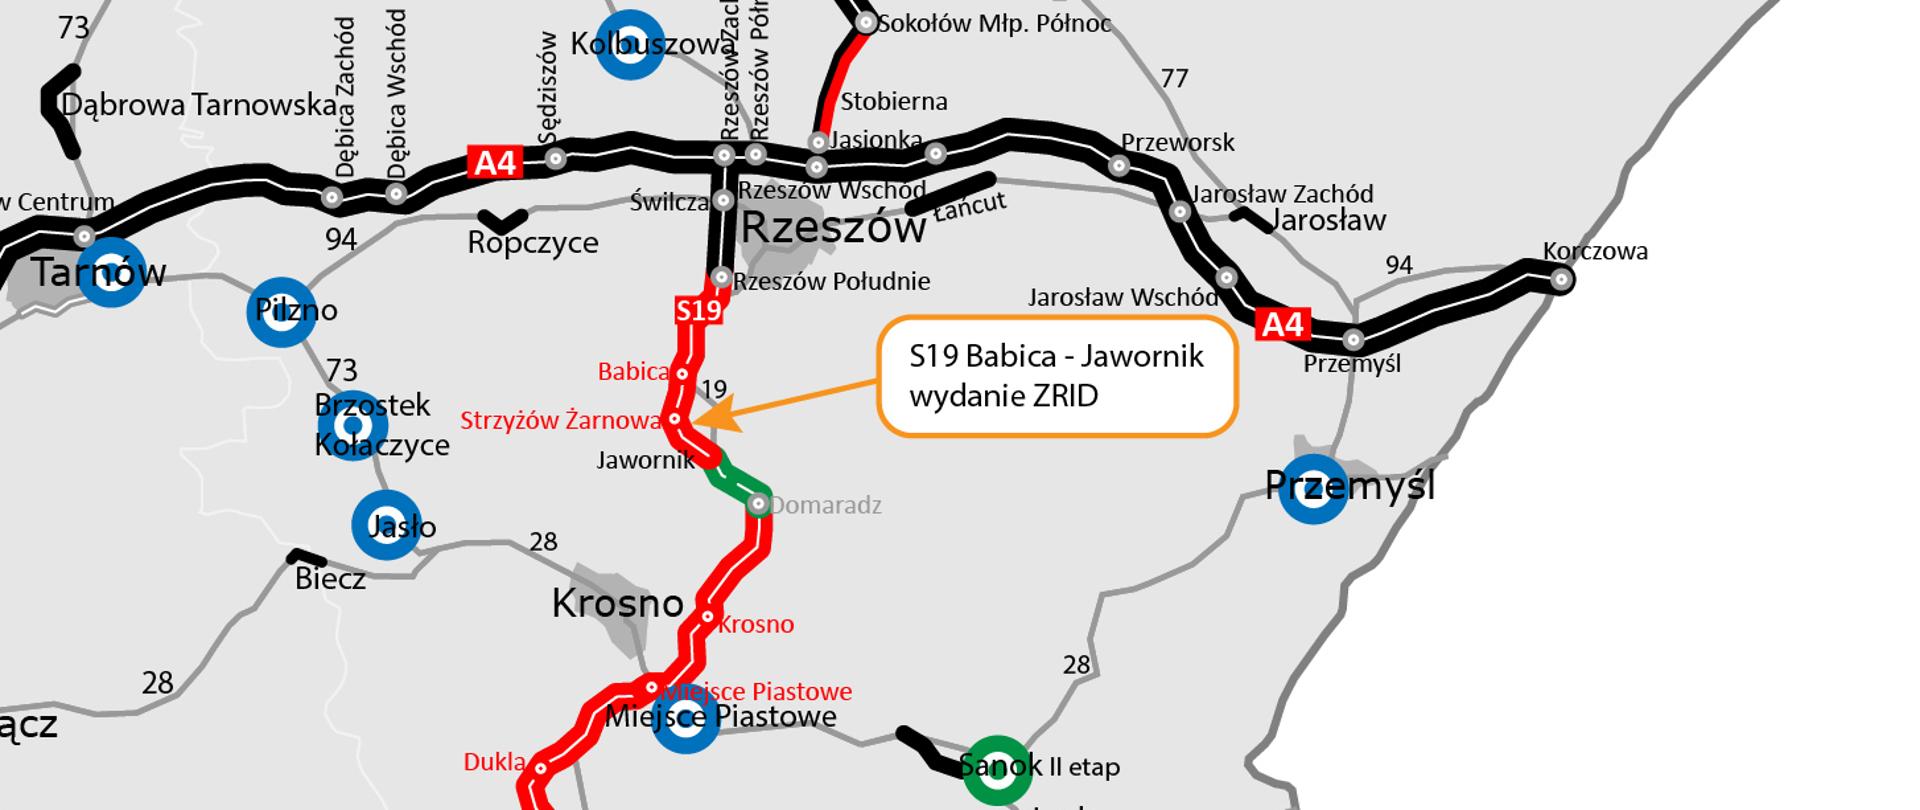 Mapa z zaznaczonym odcinkiem S19 Babica - Jawornik na który uzyskano ZRID